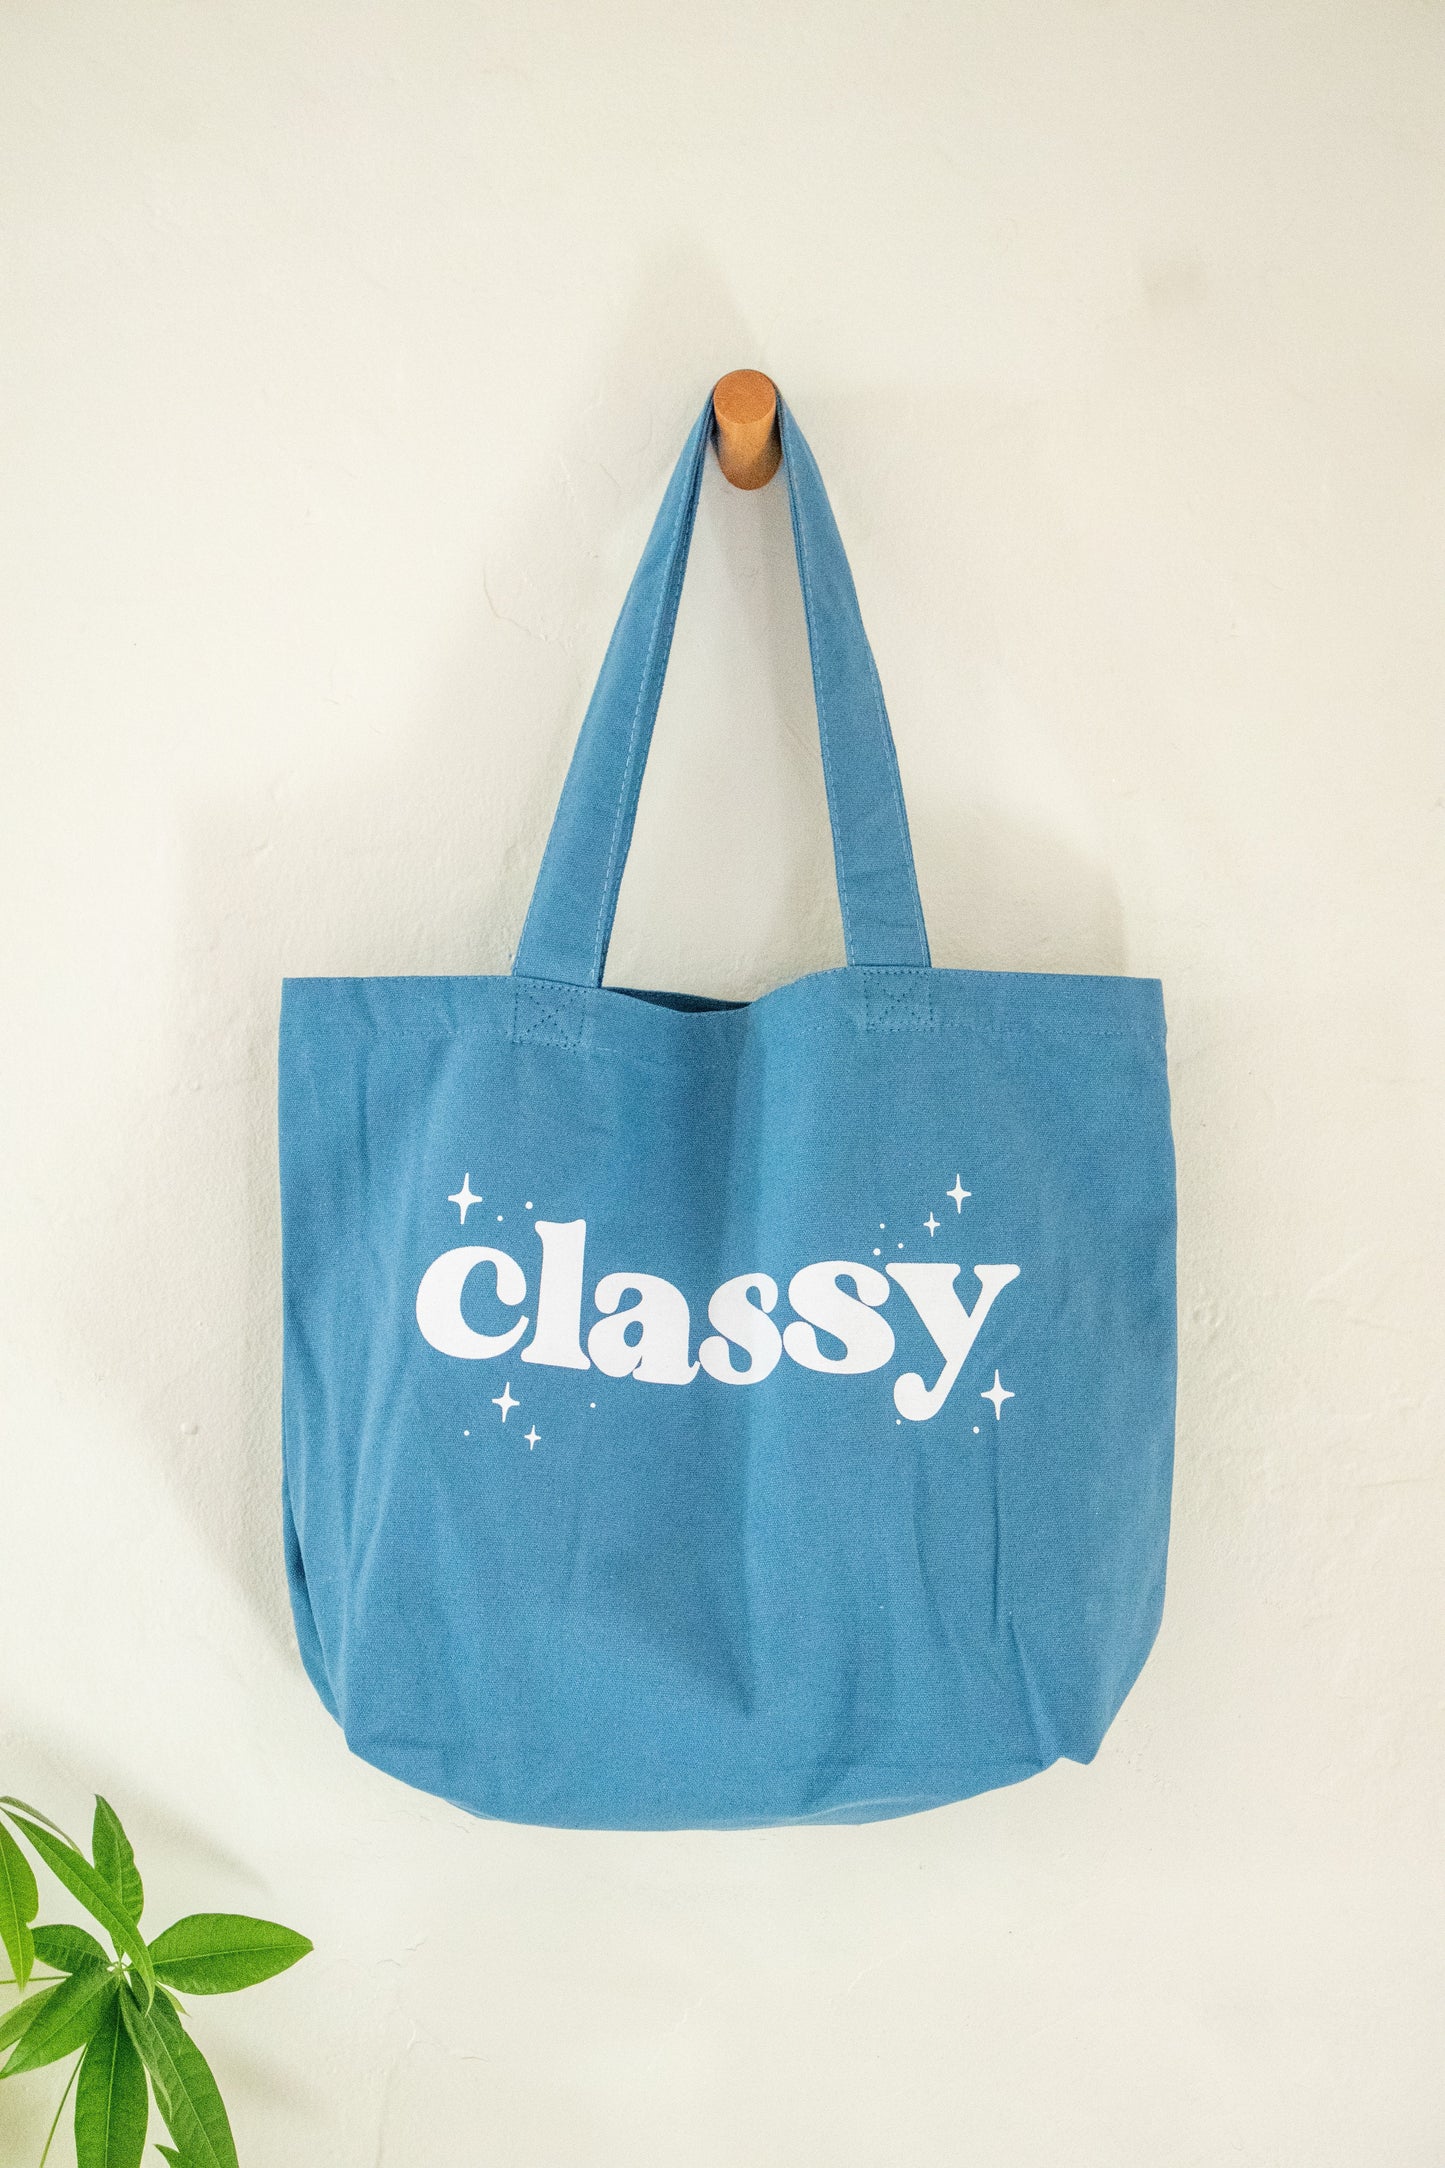 Classy Tote Bag